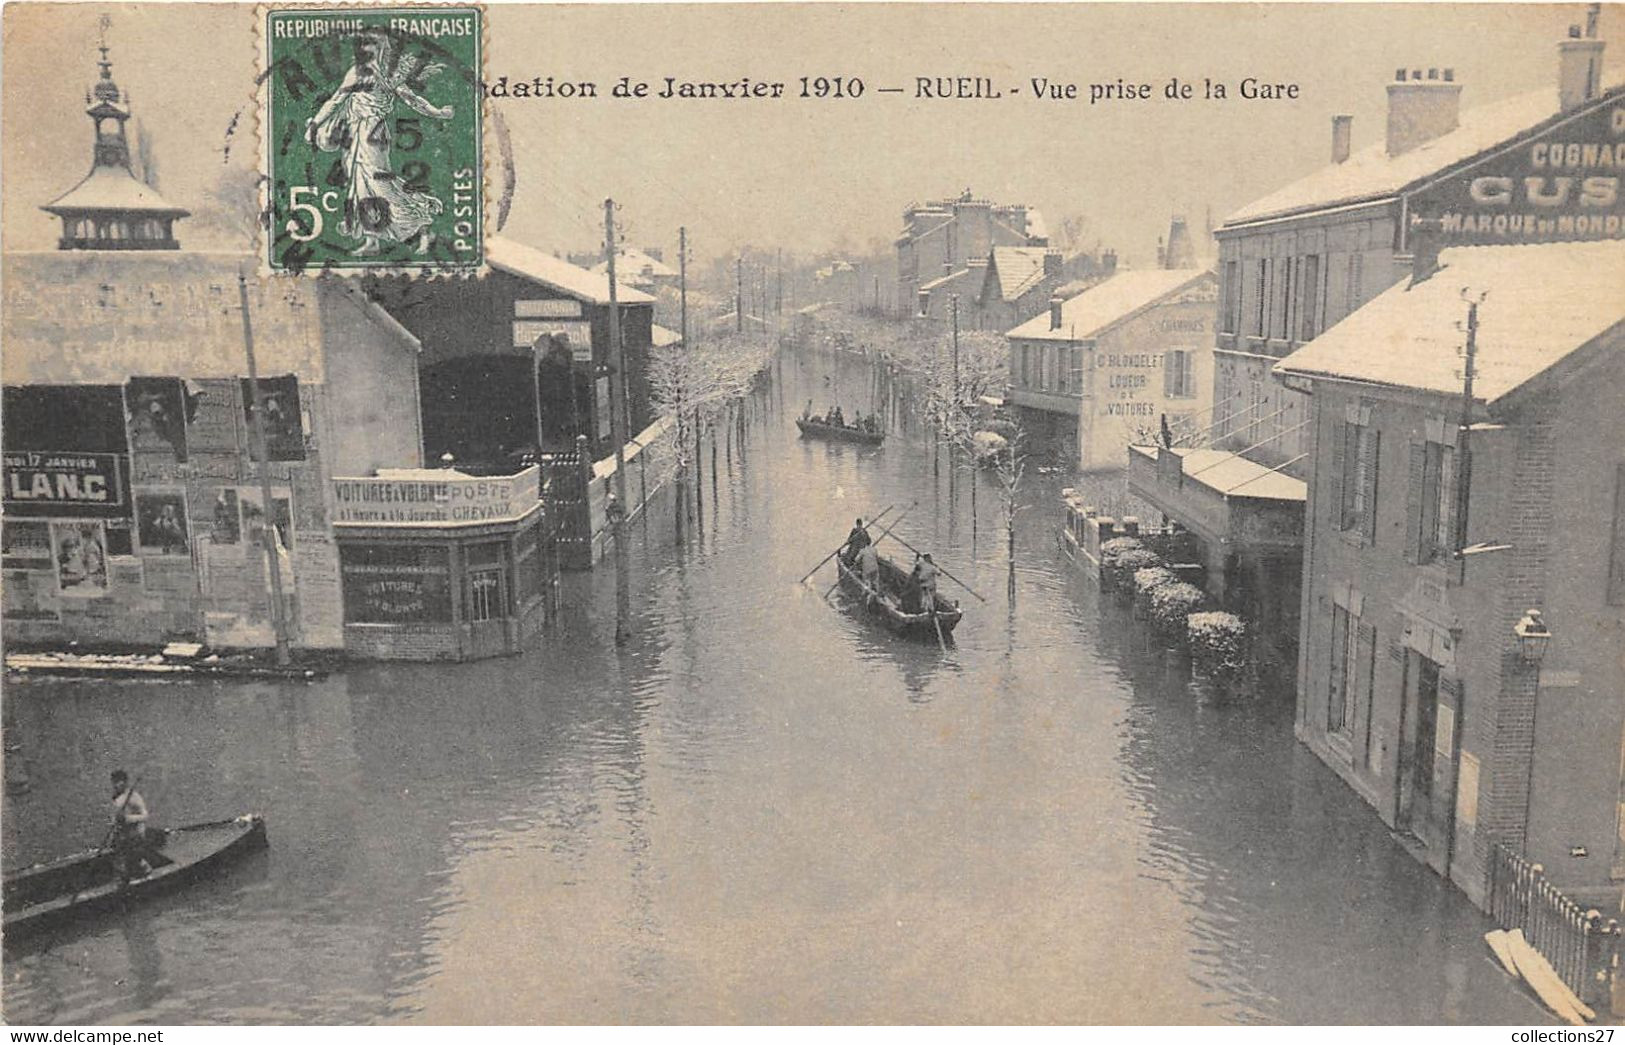 92-RUEIL- INONDATION DE JANVIER 1910- VUE PRISE DE LA GARE - Rueil Malmaison